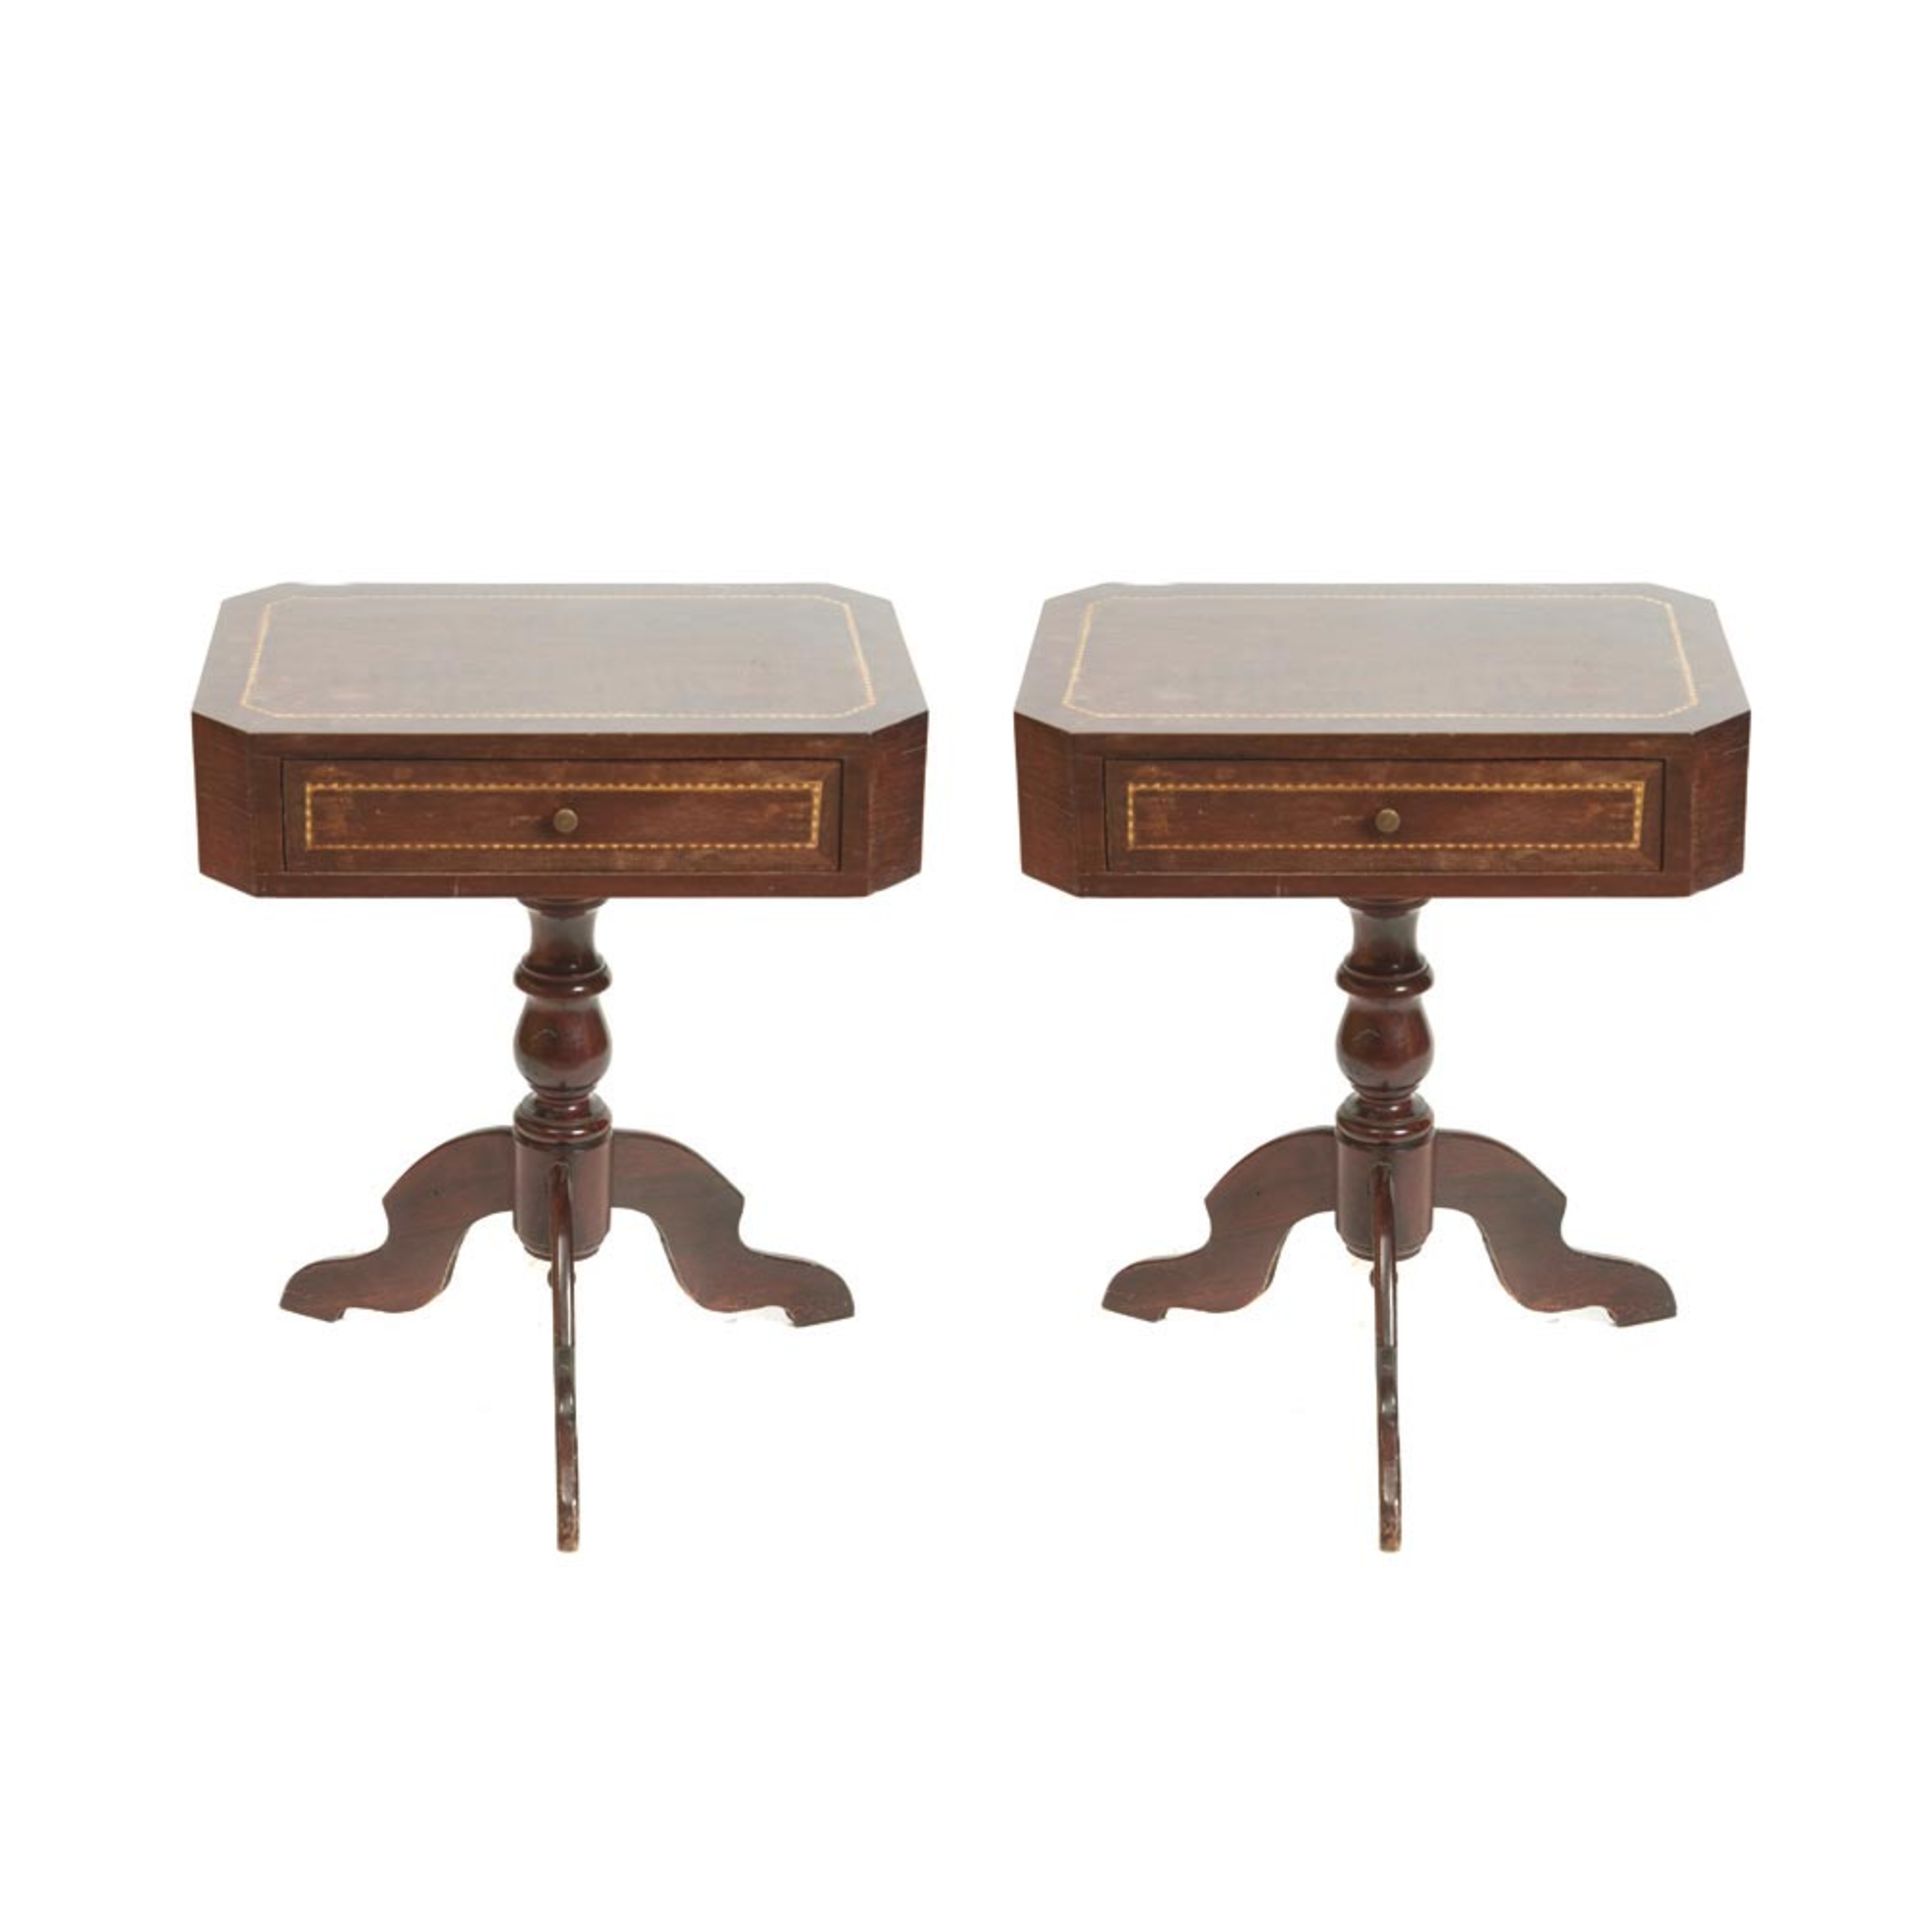 Isabelline mahogany wood pair tables 19th century. Pareja de mesitas isabelinas en madera de caoba - Bild 2 aus 3